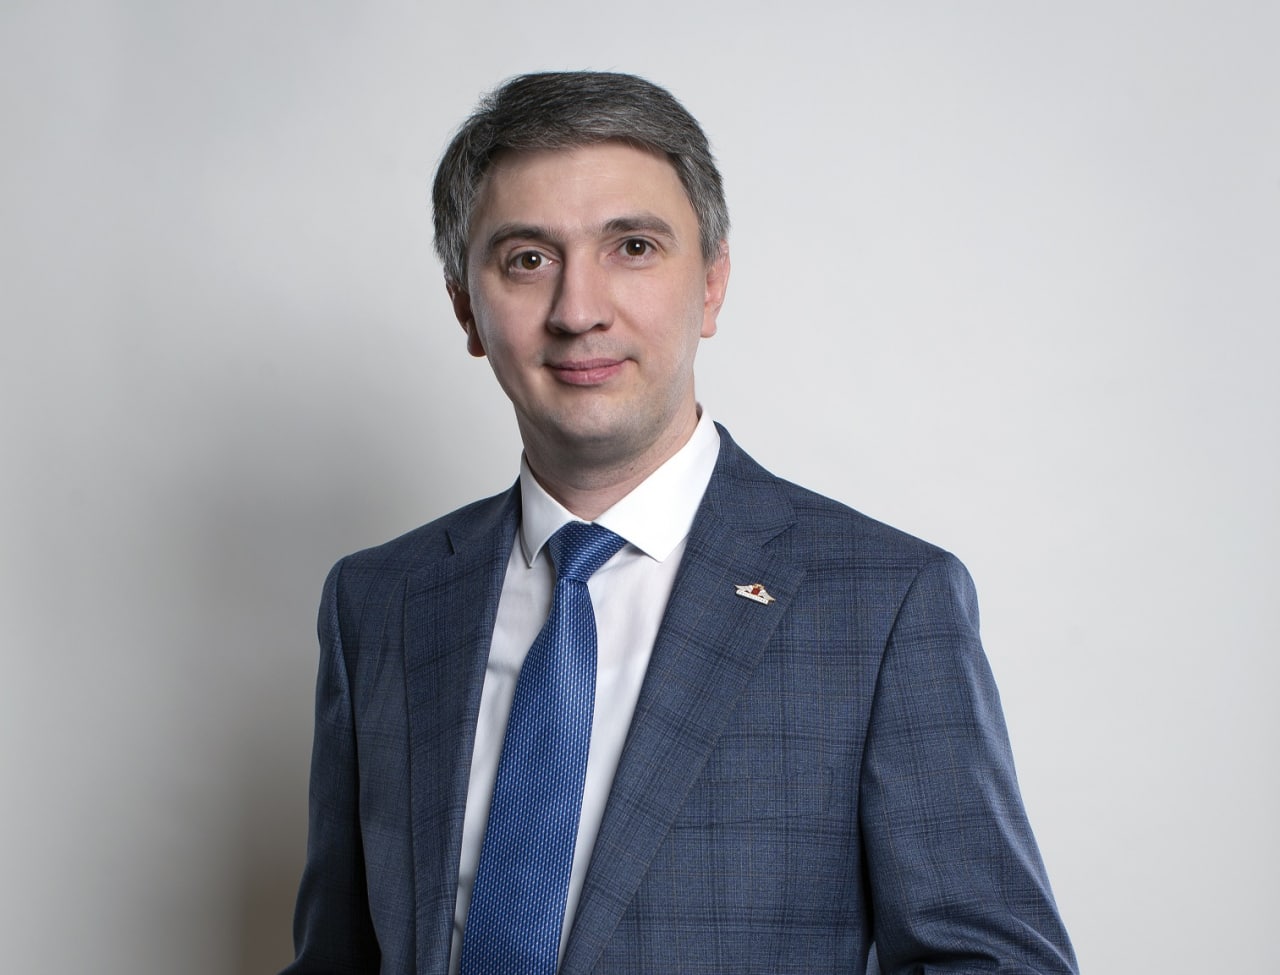 Марат Сафин, директор филиала ПАО СК «Росгосстрах» в Республике Татарстан